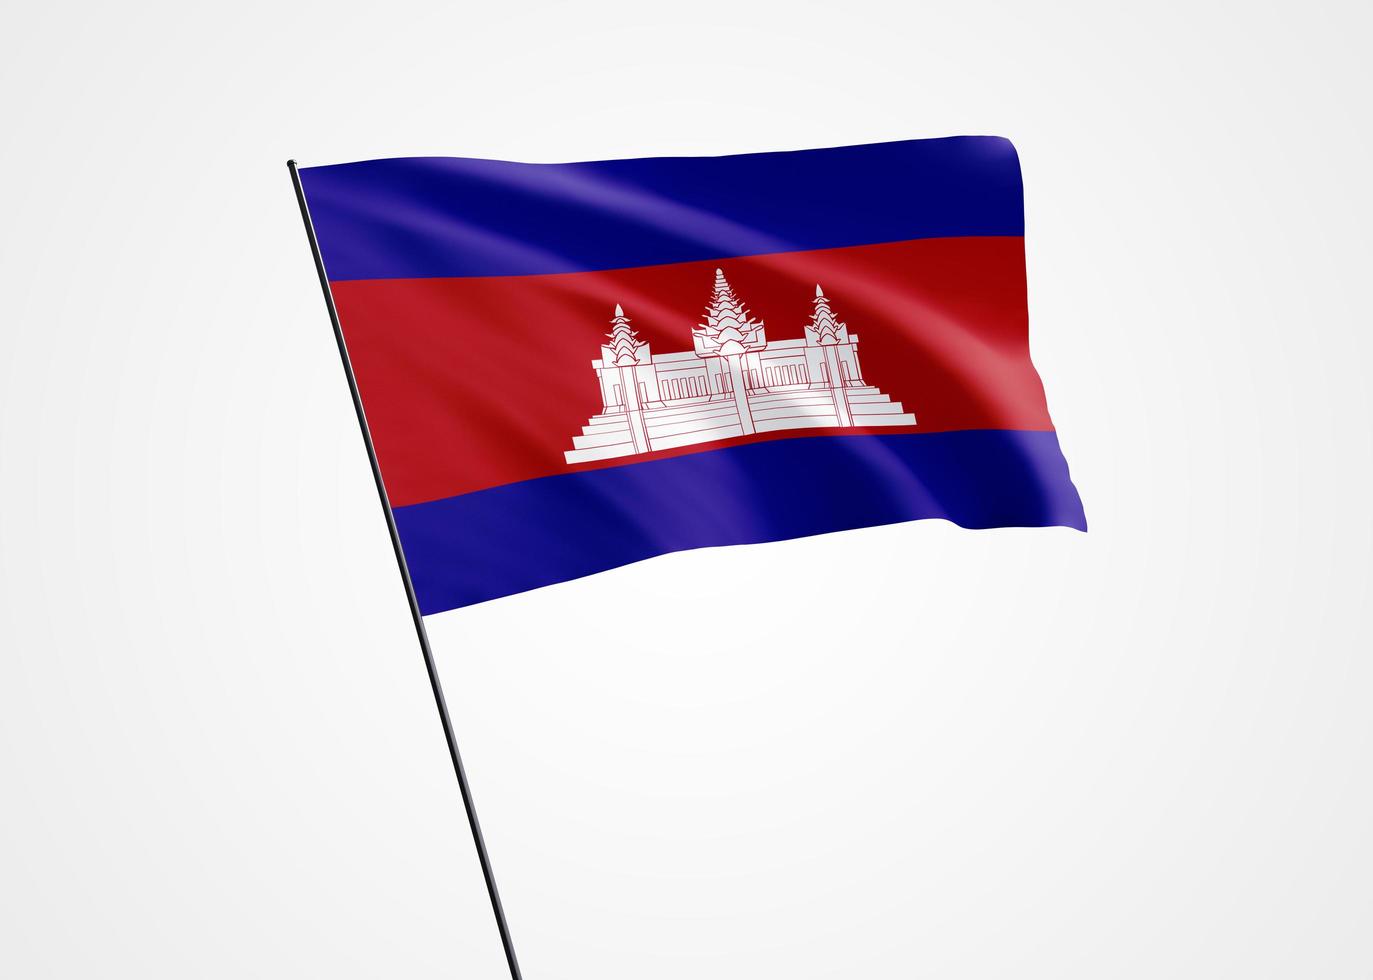 Cambodja vlag hoog op de geïsoleerde achtergrond. 9 november onafhankelijkheidsdag Cambodja. wereld nationale vlag collectie wereld nationale vlag collectie foto